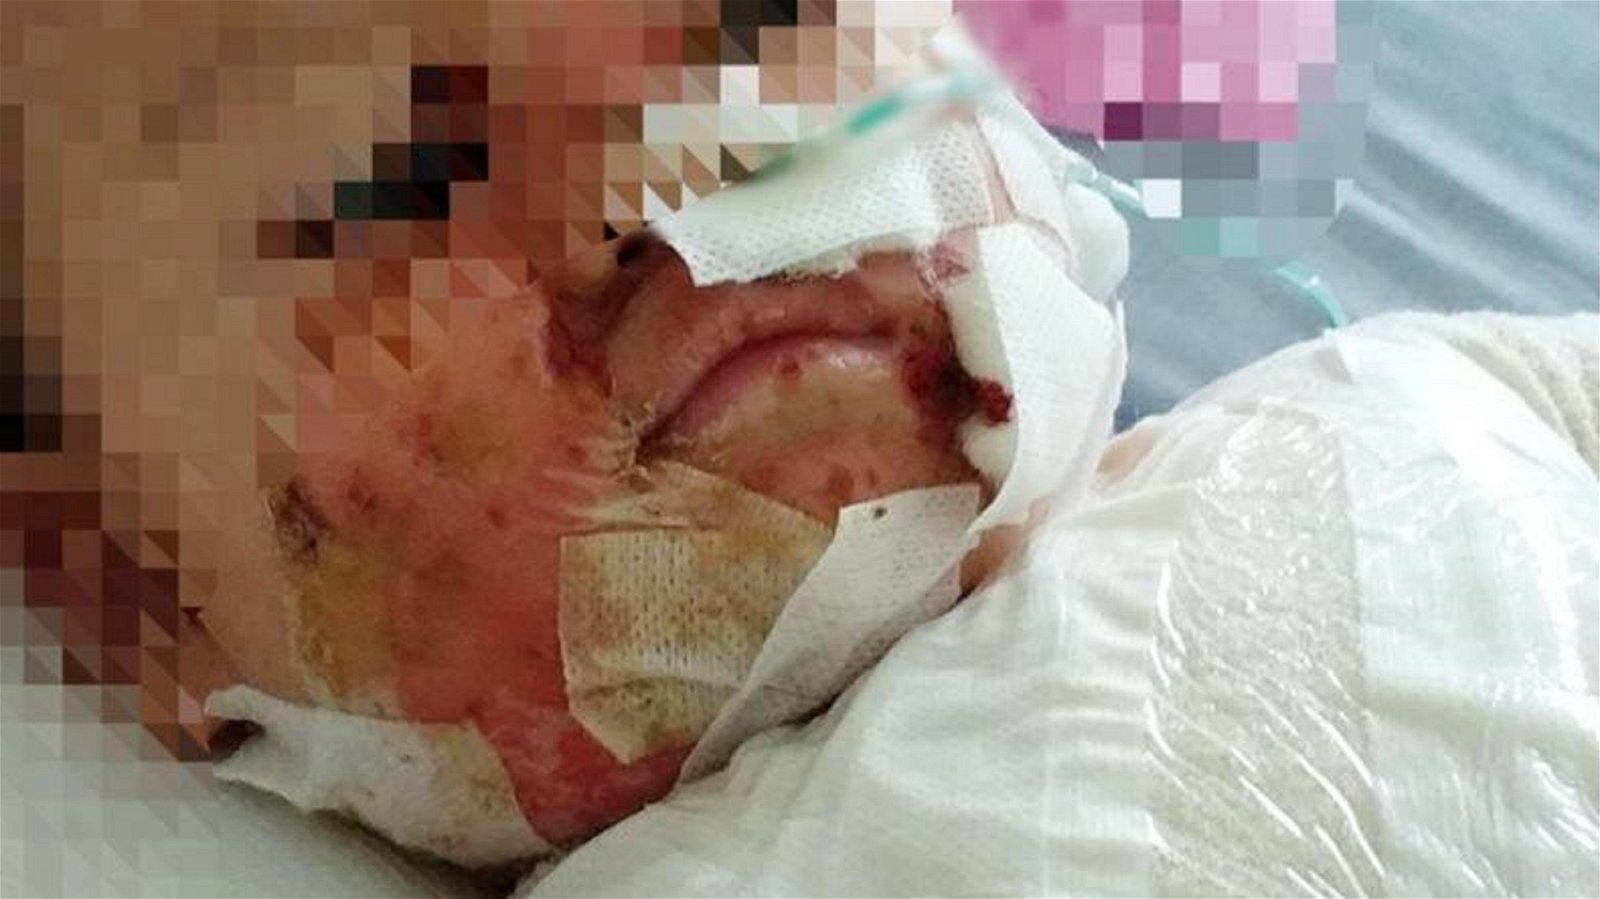 1岁4个月大男婴被滚烫的热水烫伤身体40%部位，目前留医竹脚妇幼医院治疗。